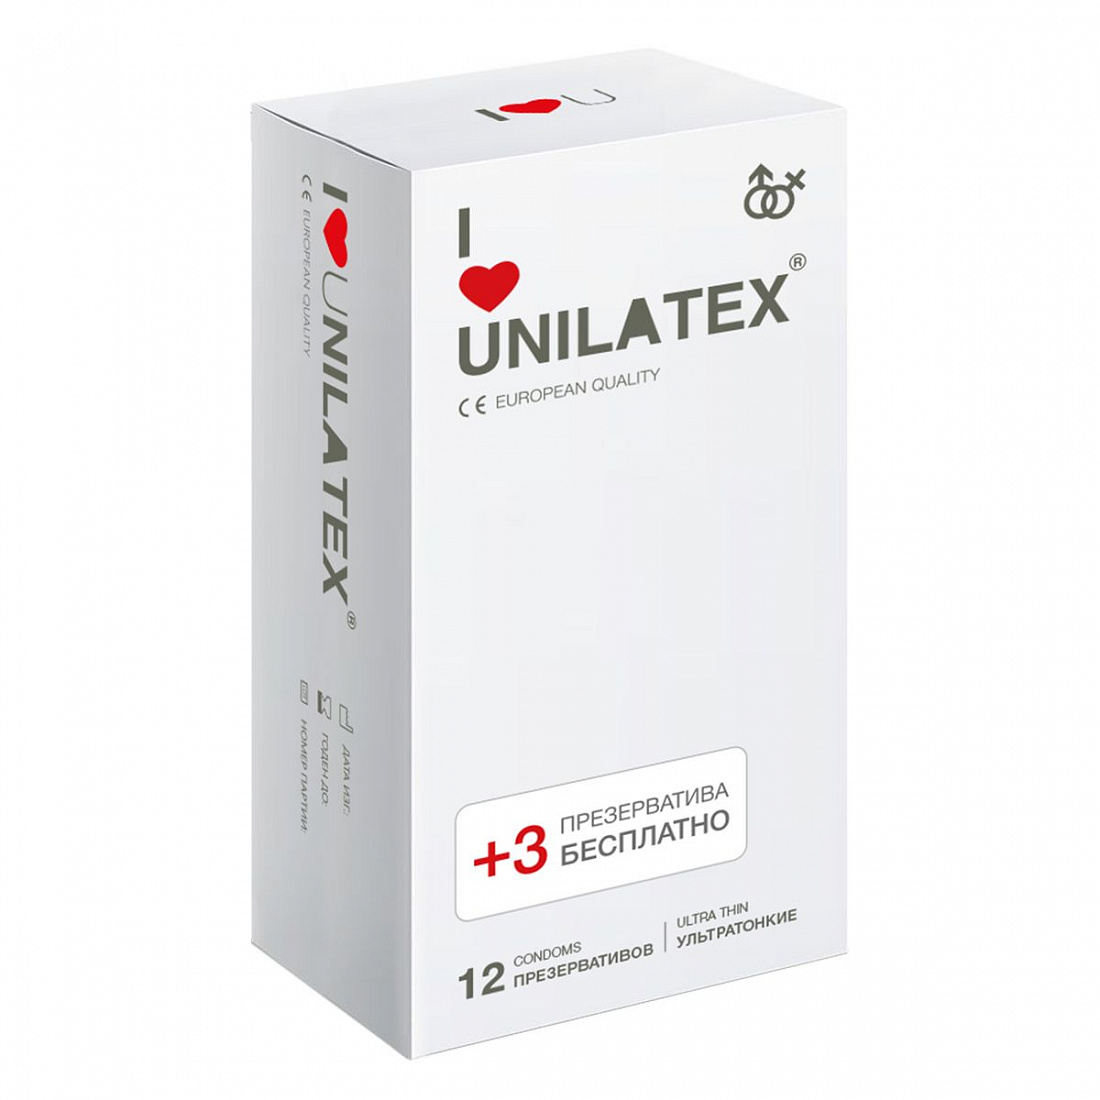   Unilatex Ultra Thin - 12 . + 3 .   Unilatex Unilatex Ultra Thin 12 + 3 -  858 .